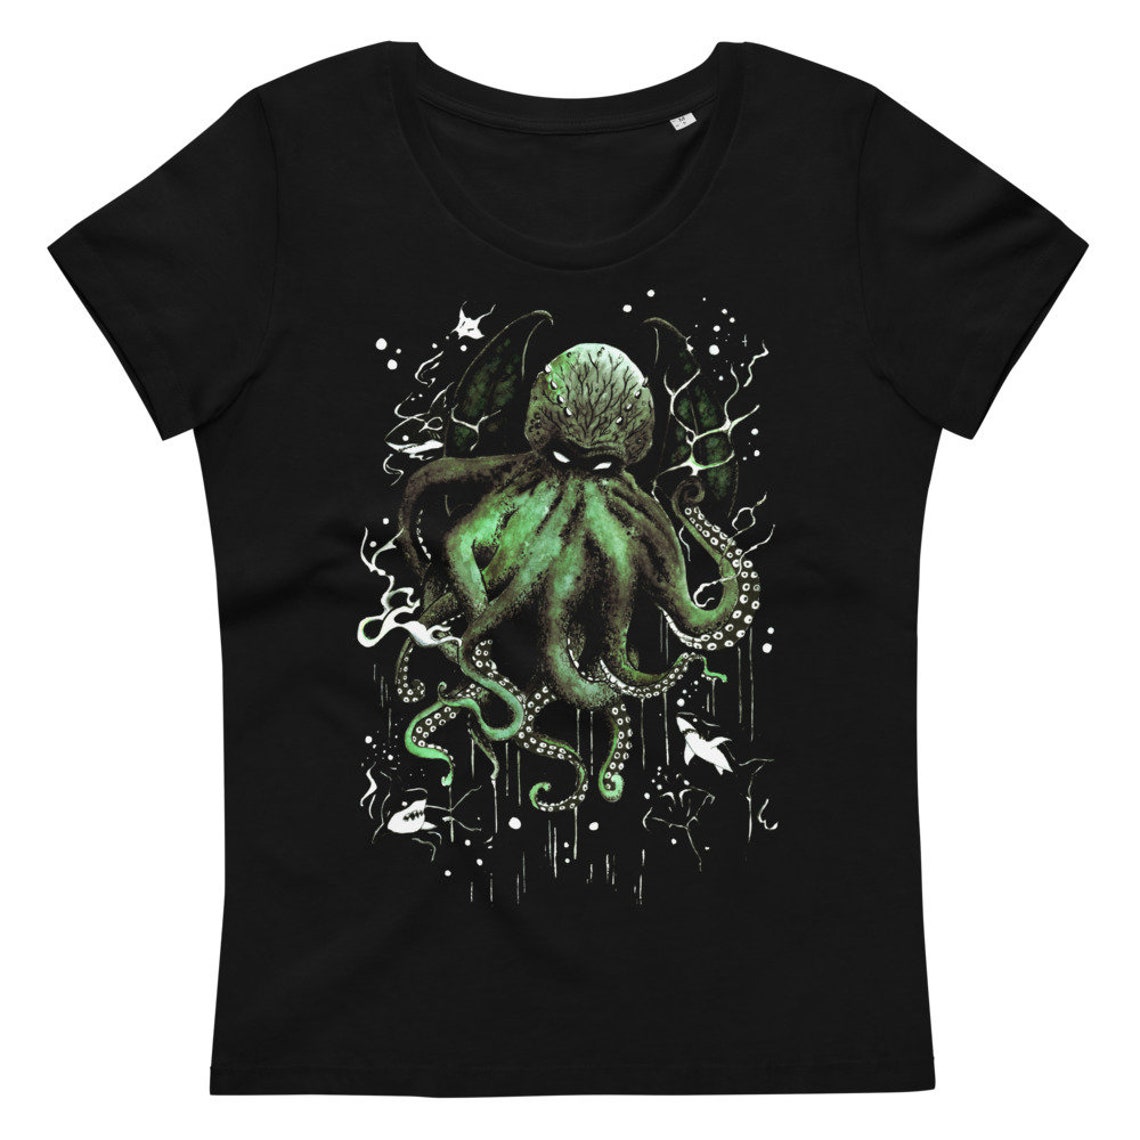 Cthulhu T-Shirt Women's Shirt Black Green Organic | Etsy